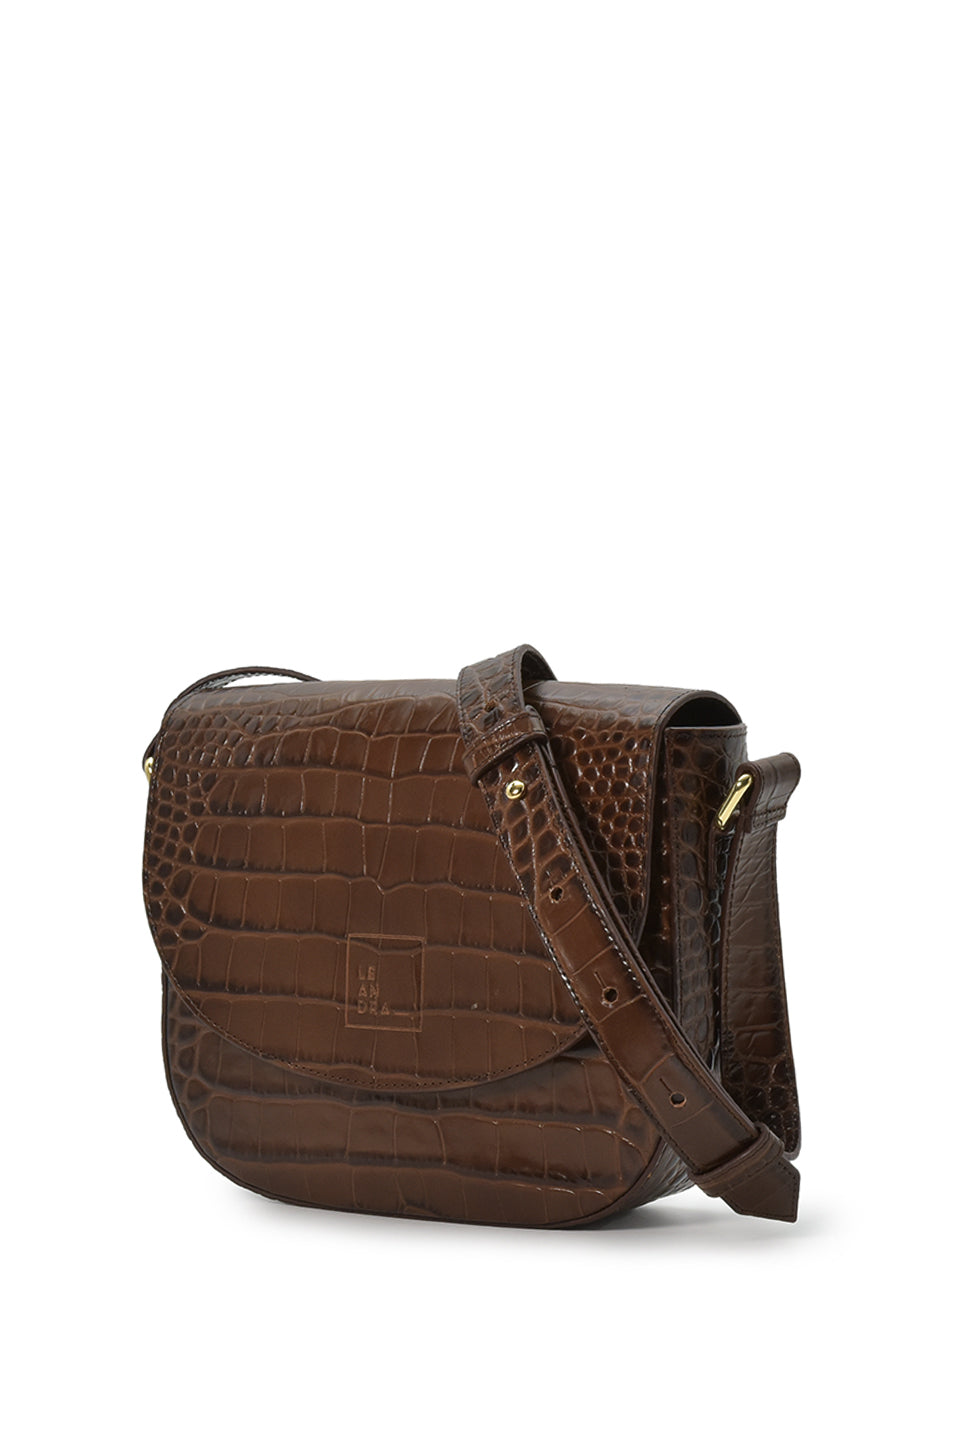 Croco Engraved Leather Shoulder Bag Brown